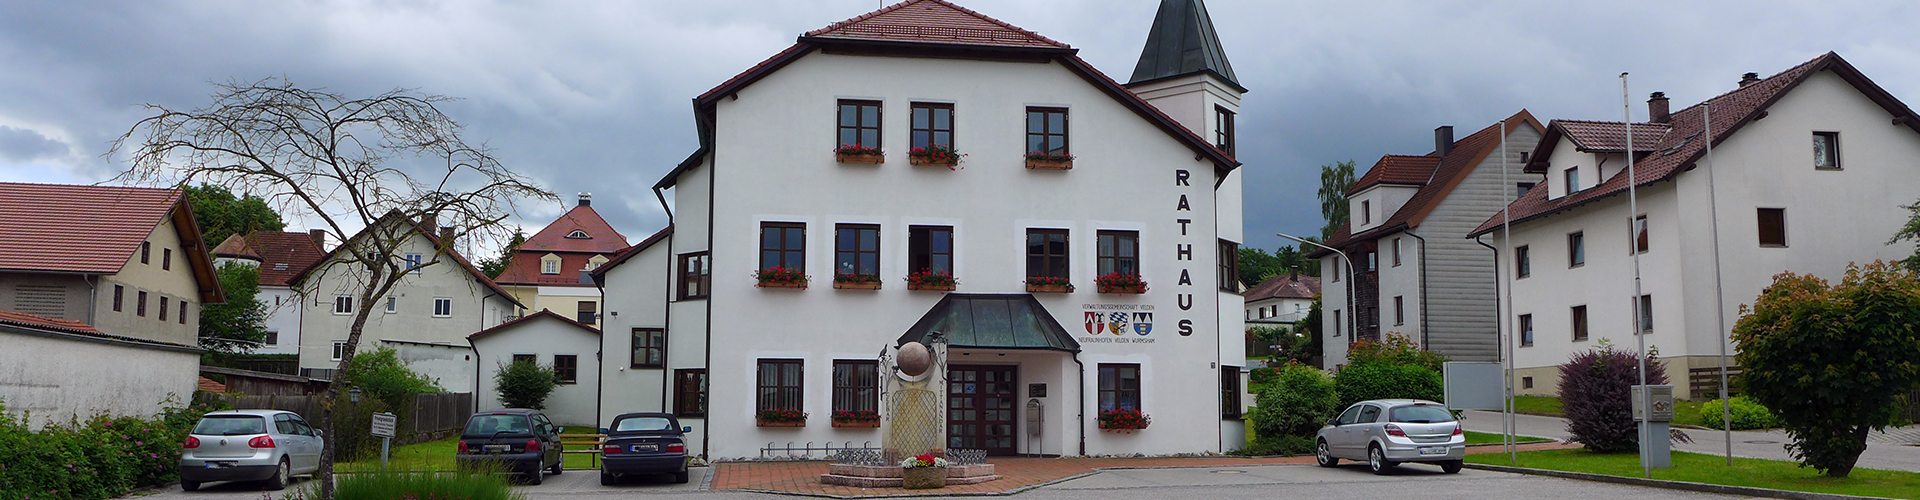 Rathaus Velden